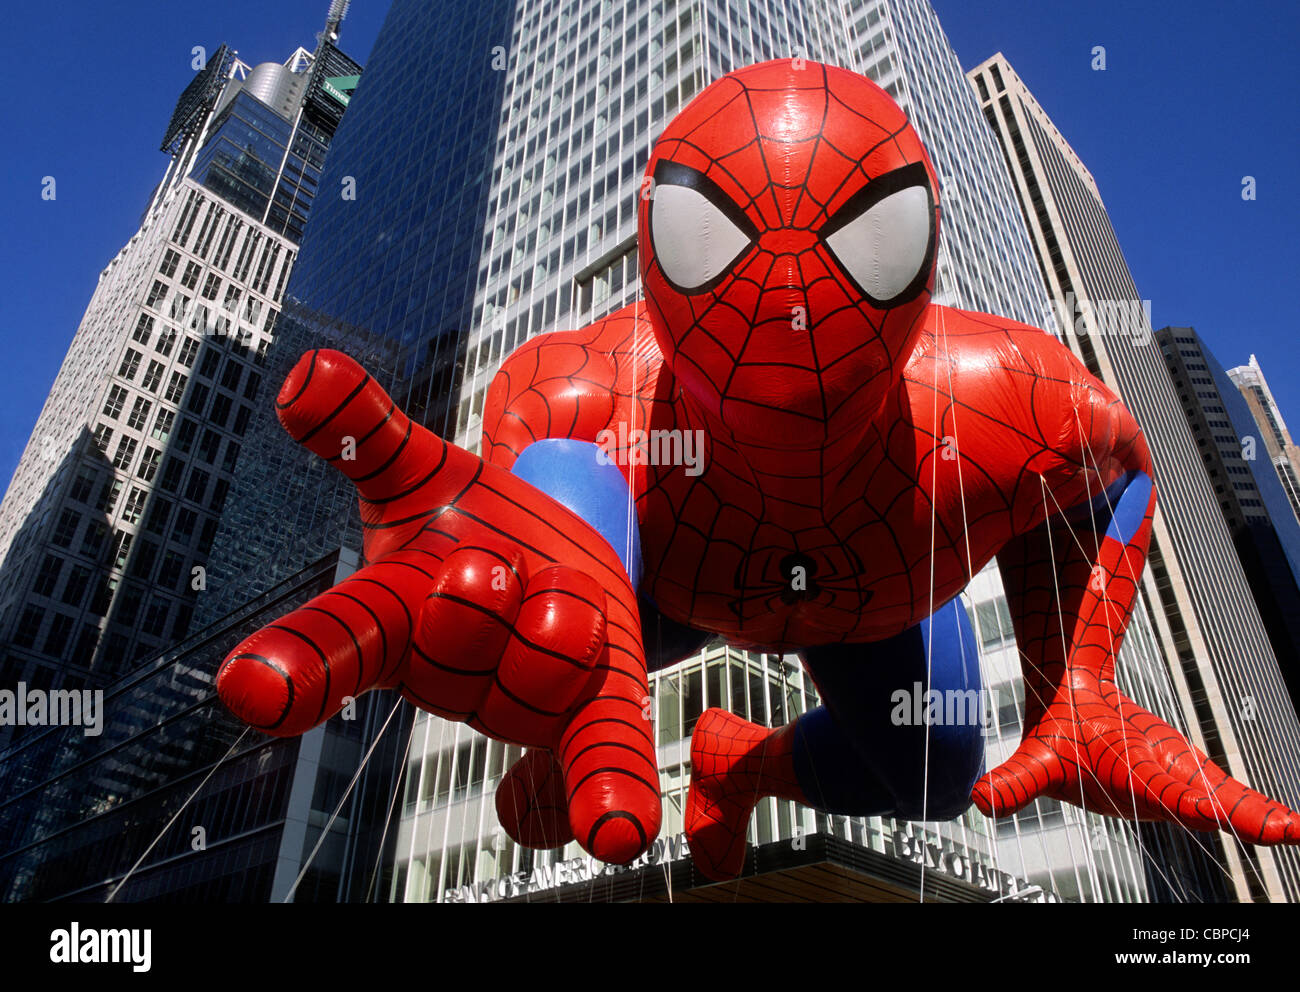 Parade de Thanksgiving. Ballon gonflable Spiderman et gratte-ciel de New York. La parade de Macy à New York, aux États-Unis. Gros plan ou gros plan. Banque D'Images